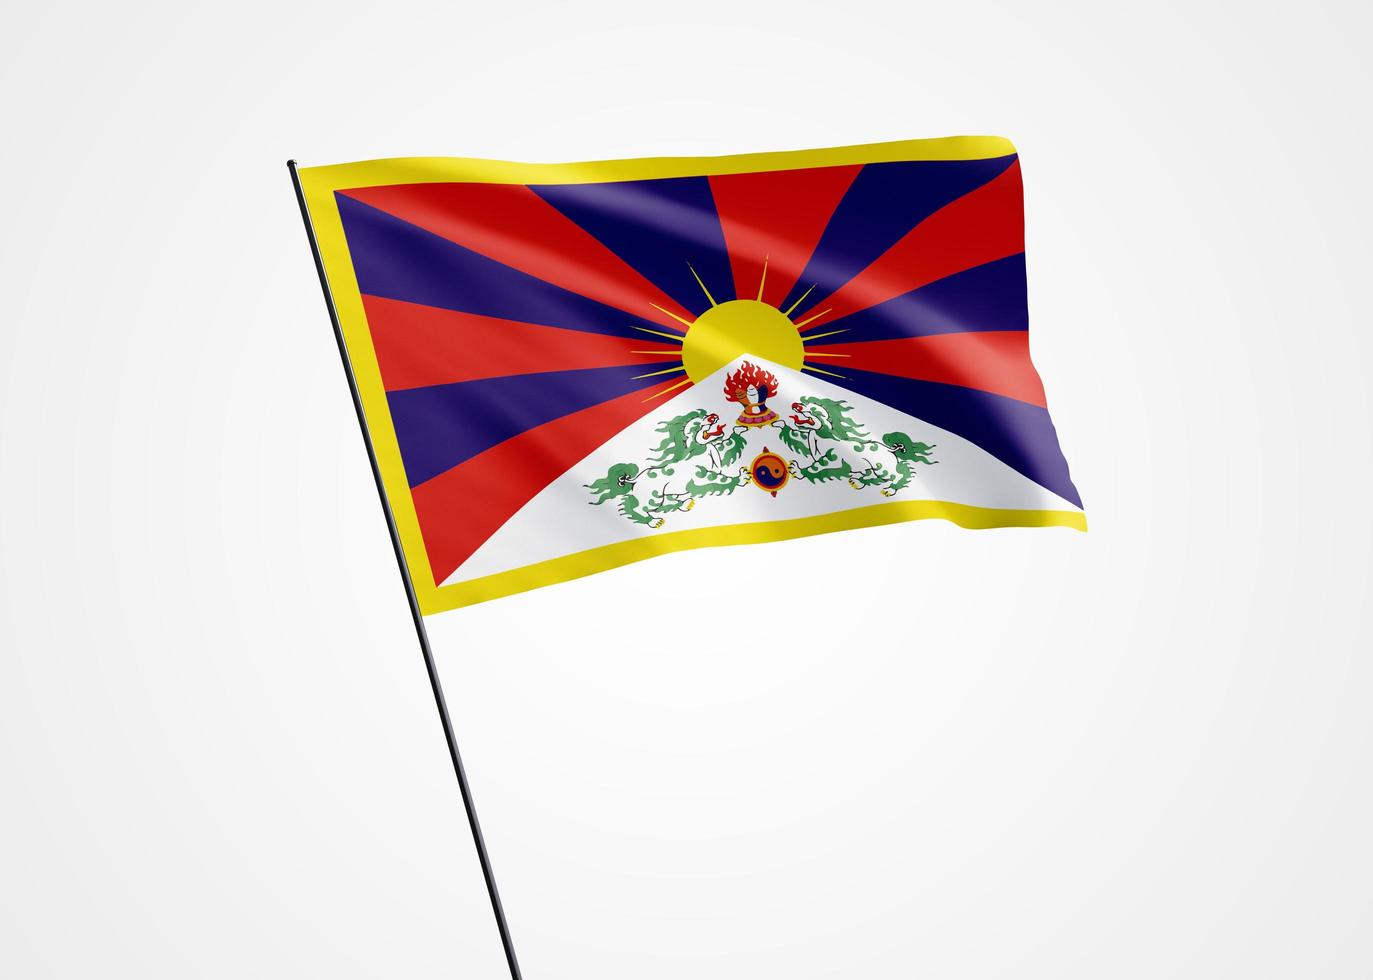 le tibet vole haut dans le fond isolé. 13 février fête de l'indépendance du tibet. collection de drapeau national du monde illustration 3d photo